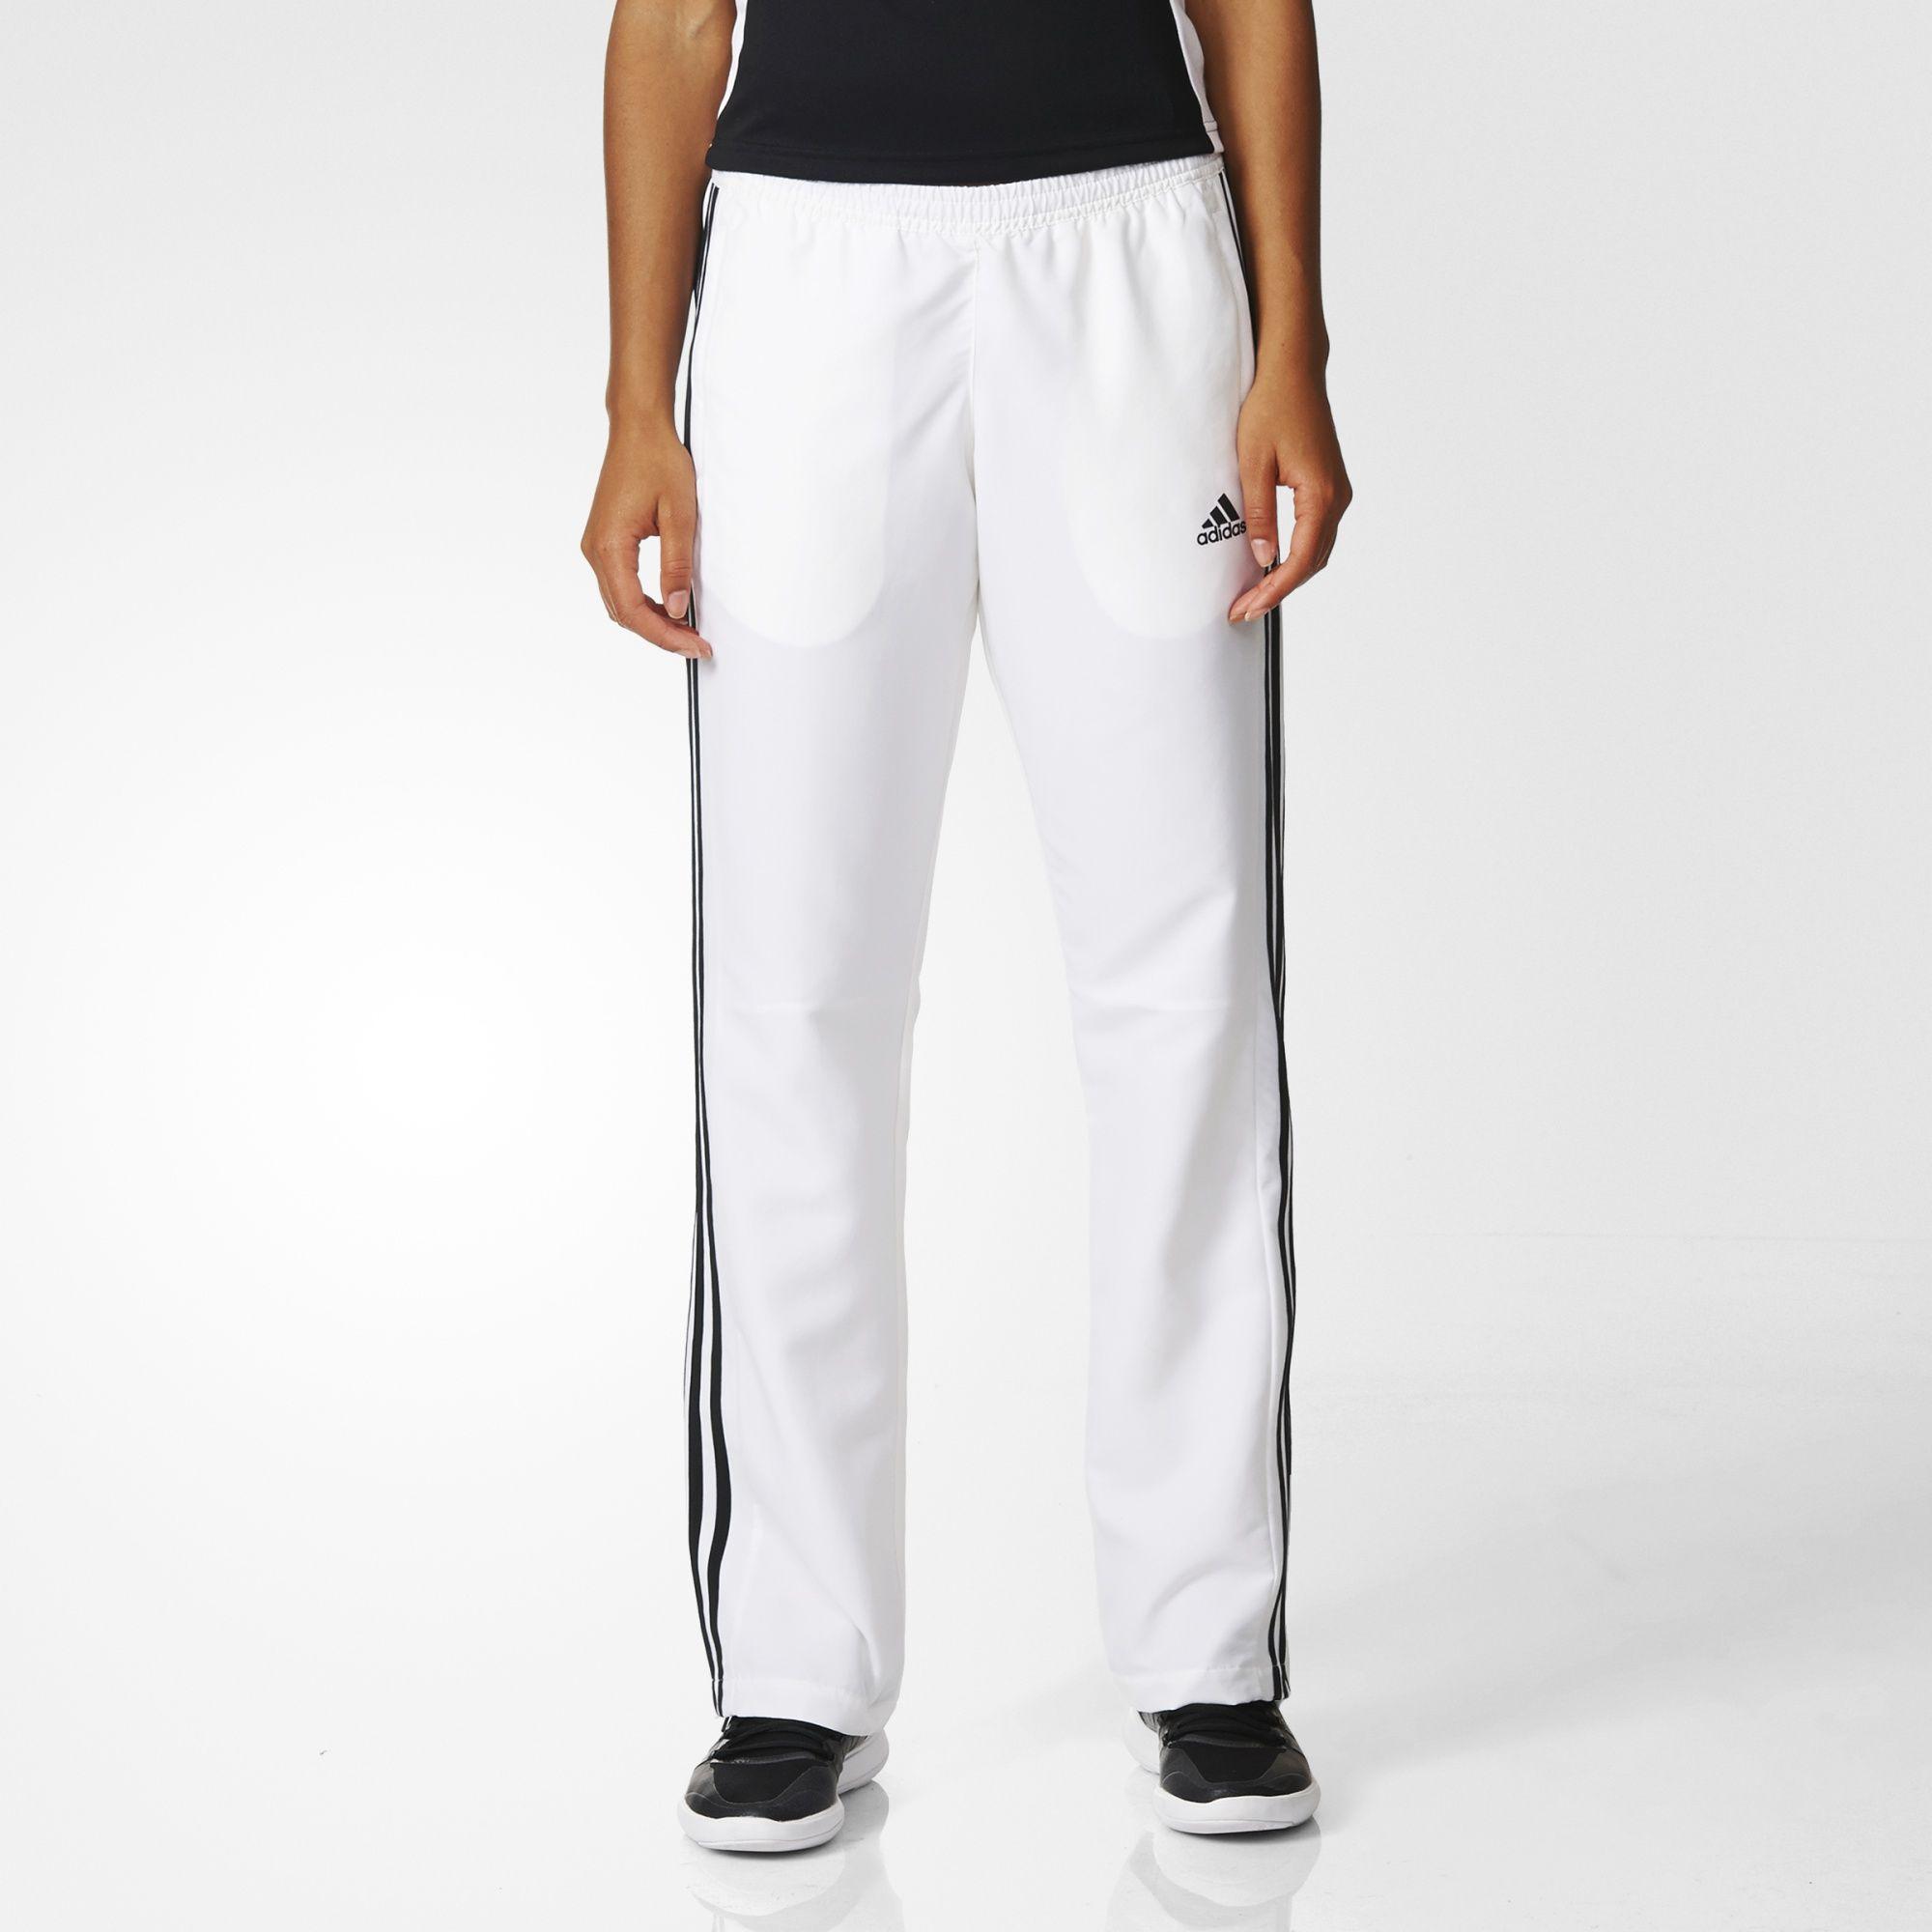 Adidas Womens T16 Team Pants - White - Tennisnuts.com